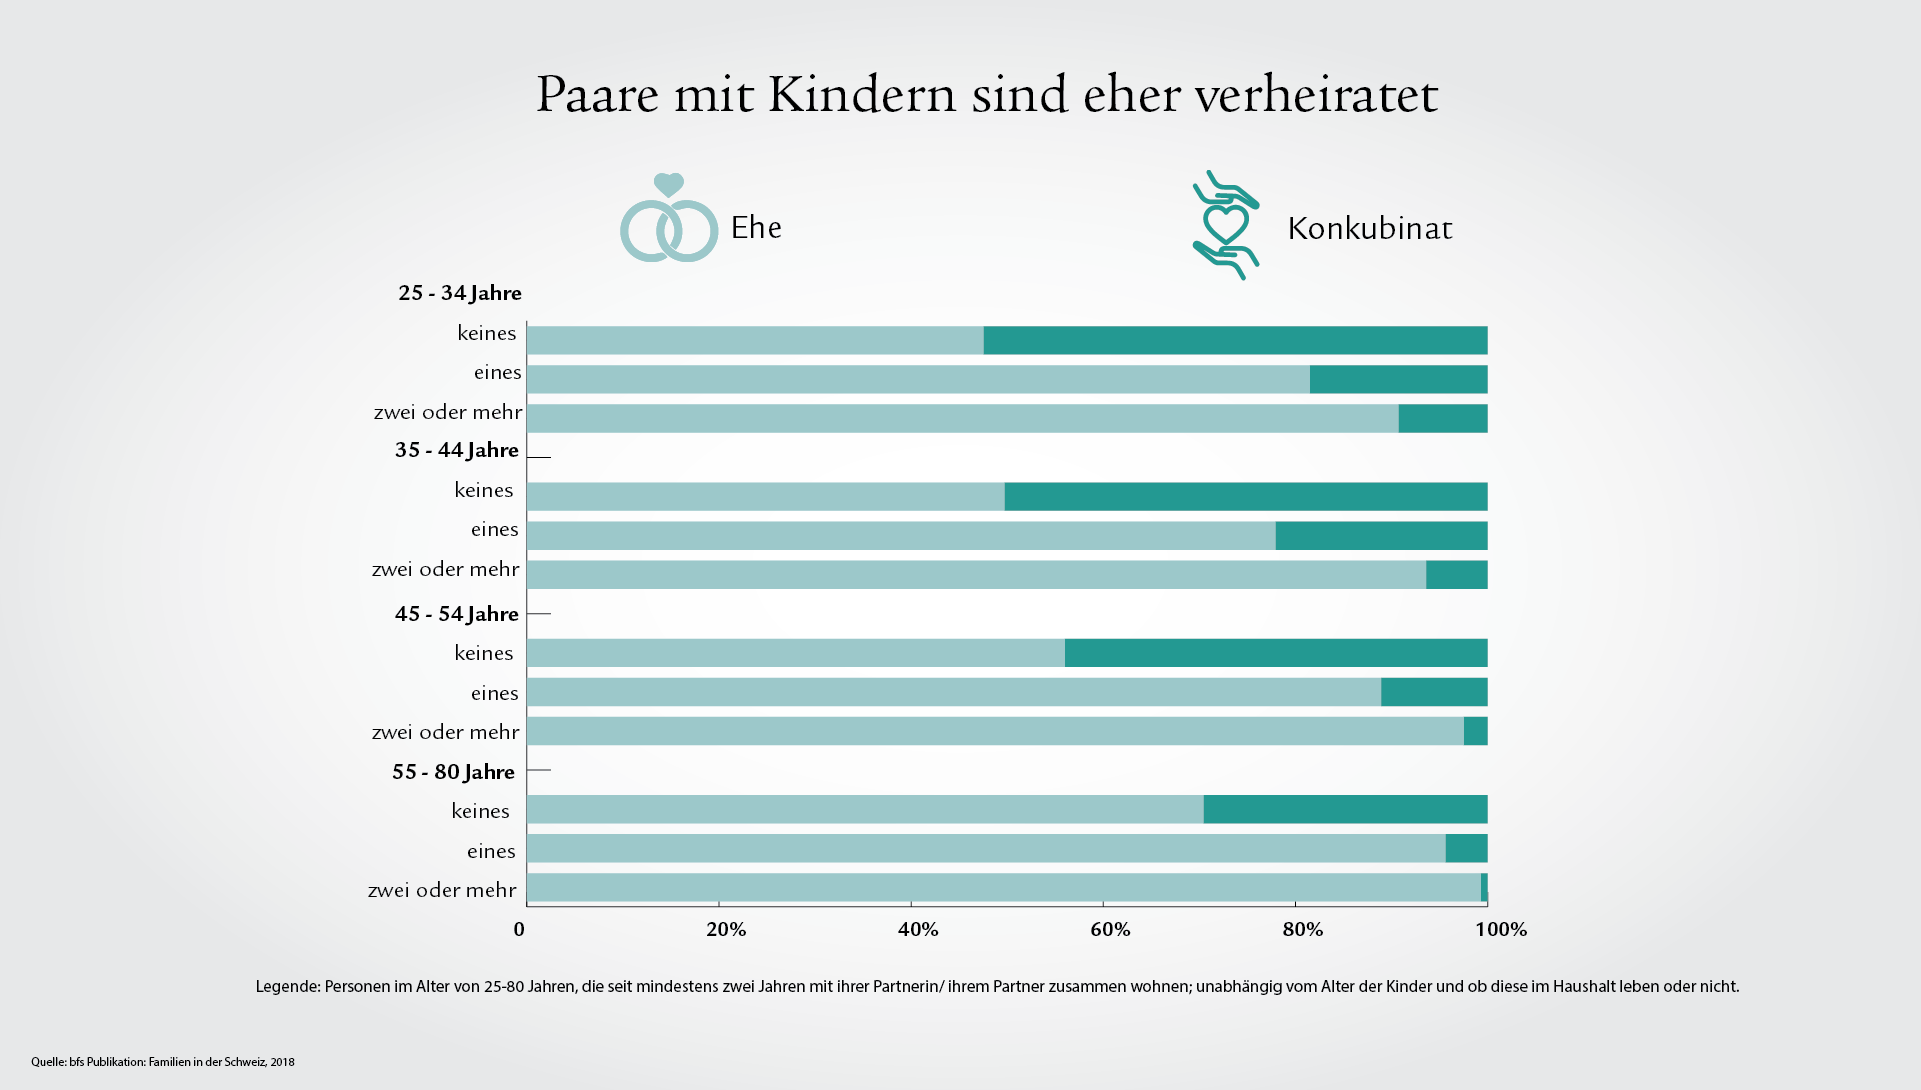 Infografik zeigt die Aufteilung von Ehe und Konkubinat bei verschiedenen Altersgruppen